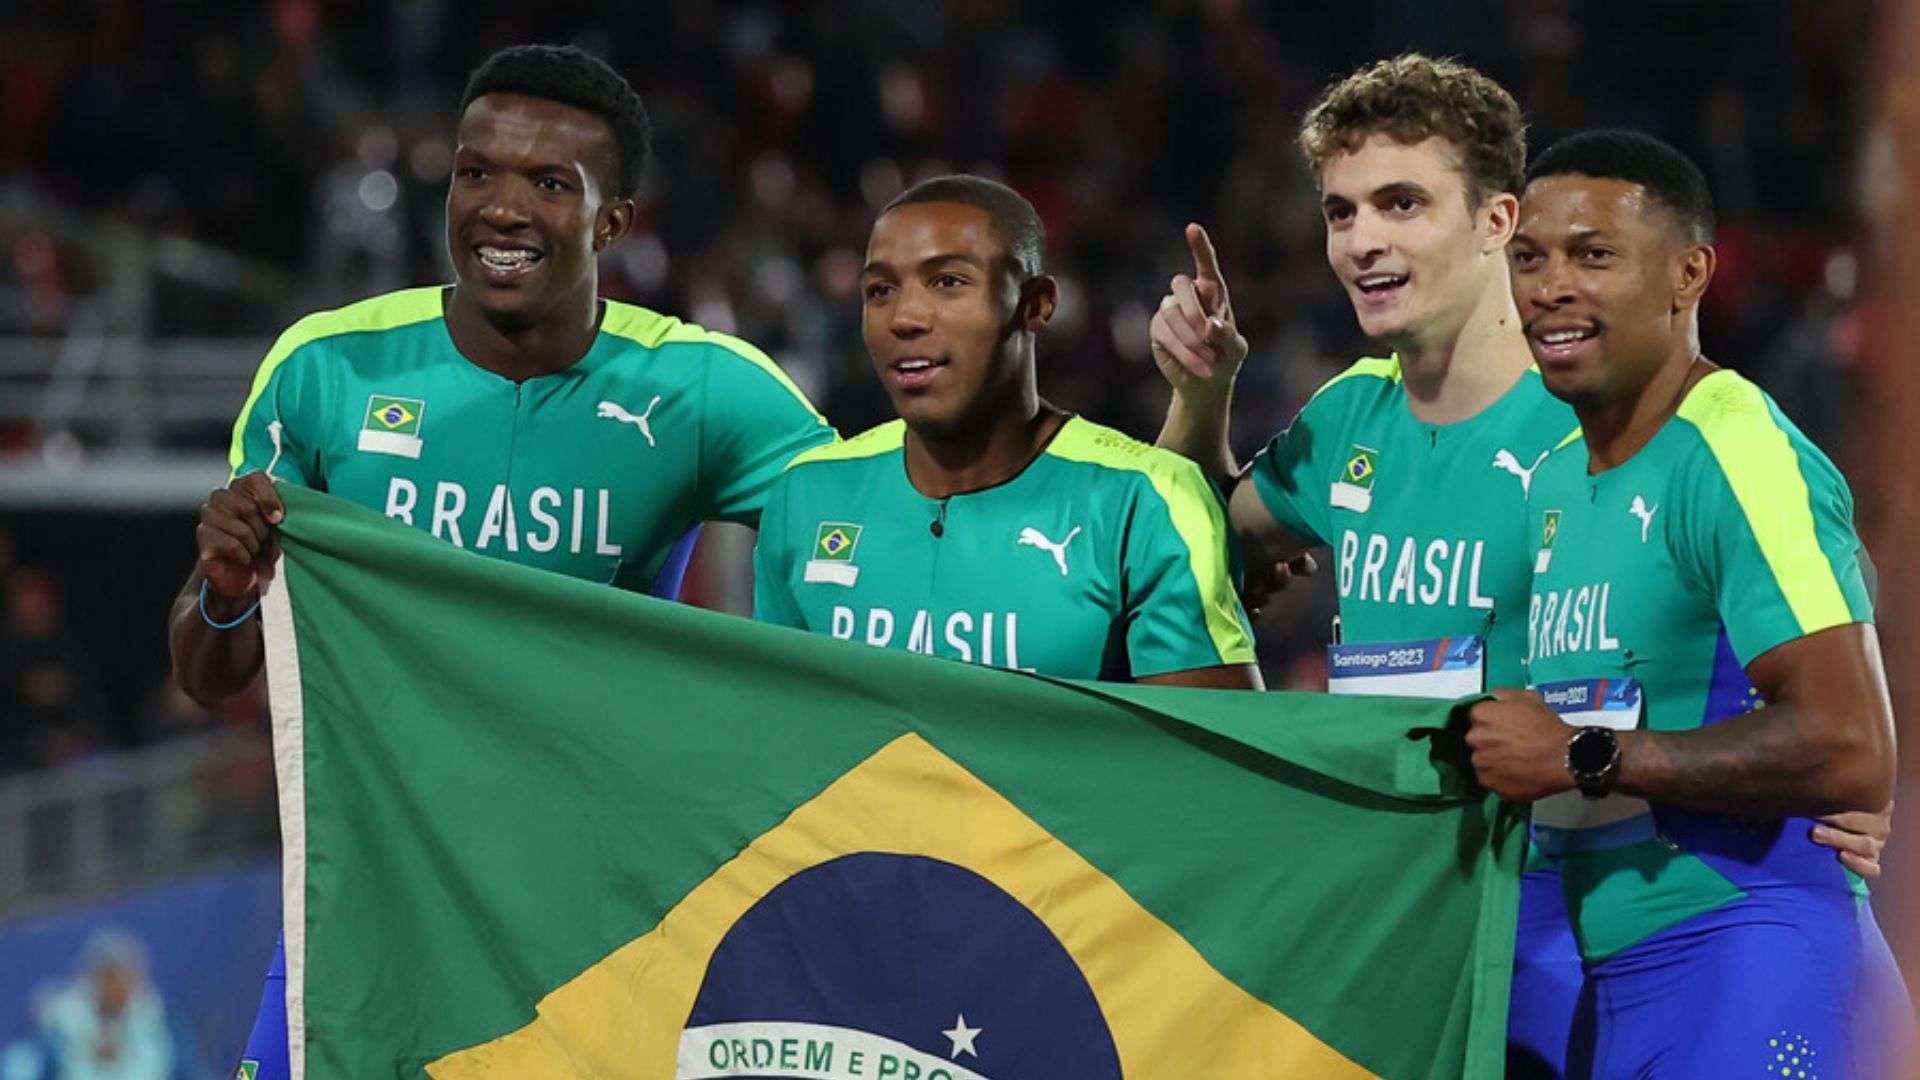 Notable remate de Renan Correa le da el oro a Brasil en el 4x100